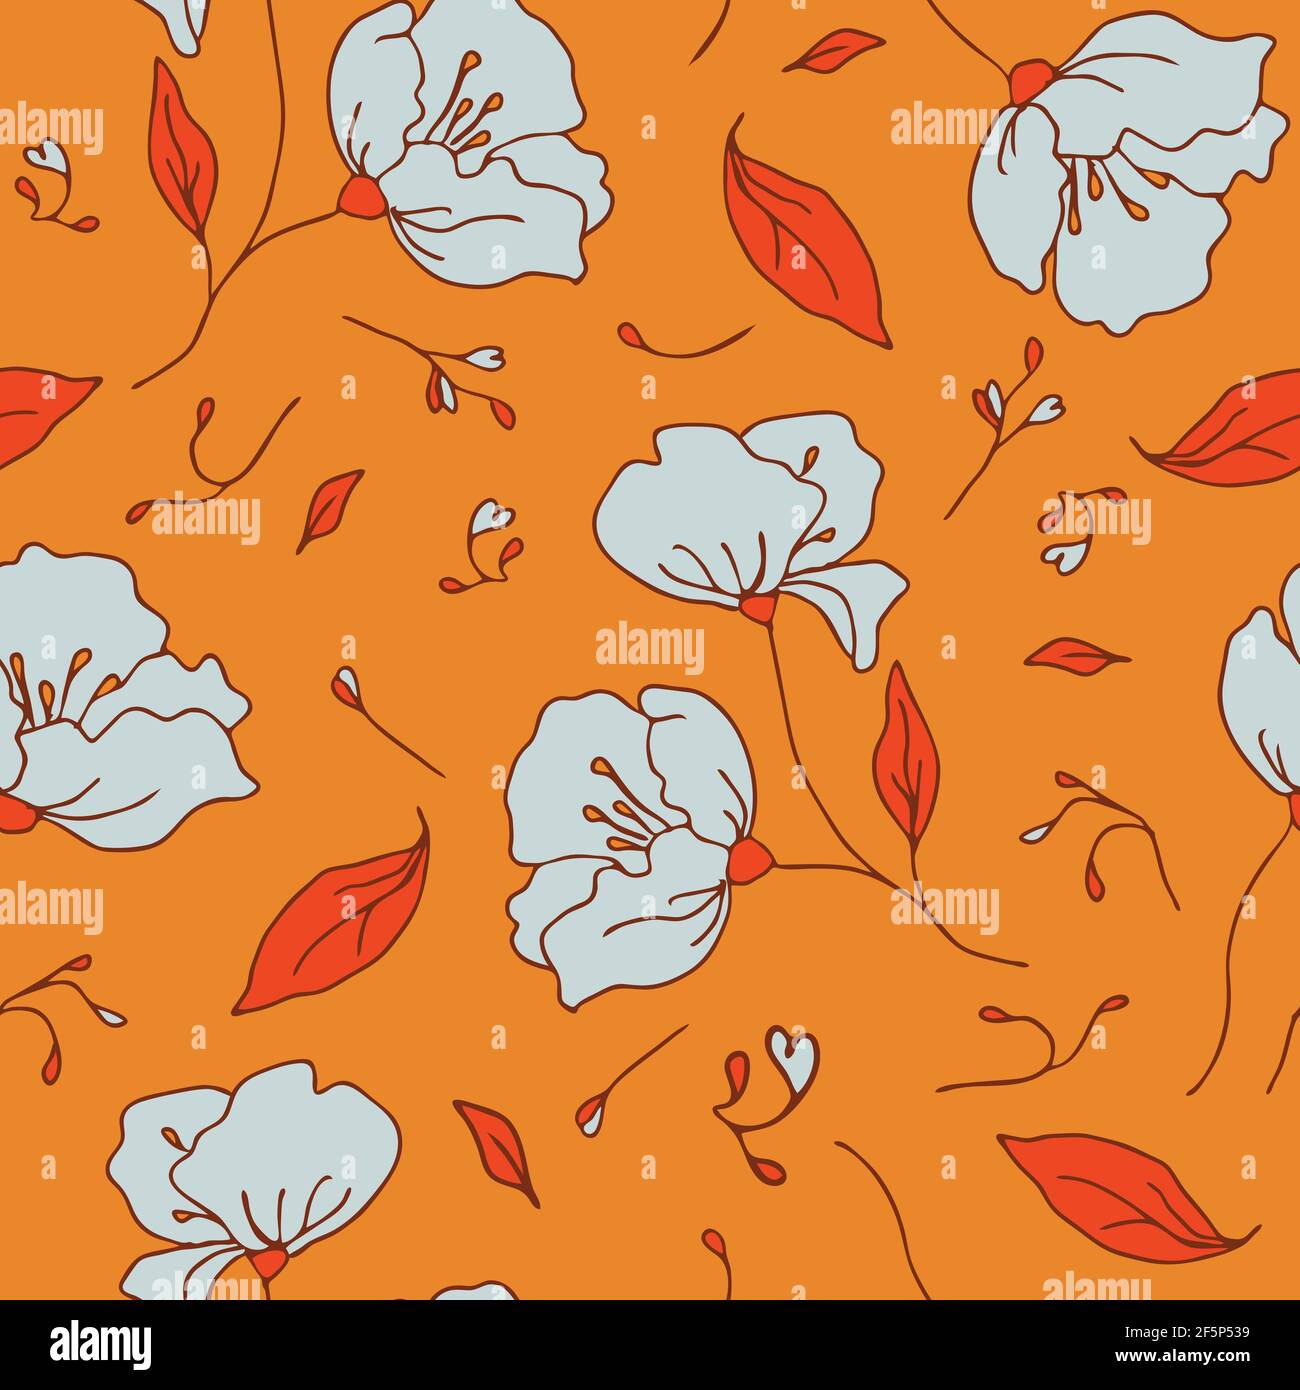 Orange Floral Wallpaper Stock Illustrations  112086 Orange Floral  Wallpaper Stock Illustrations Vectors  Clipart  Dreamstime